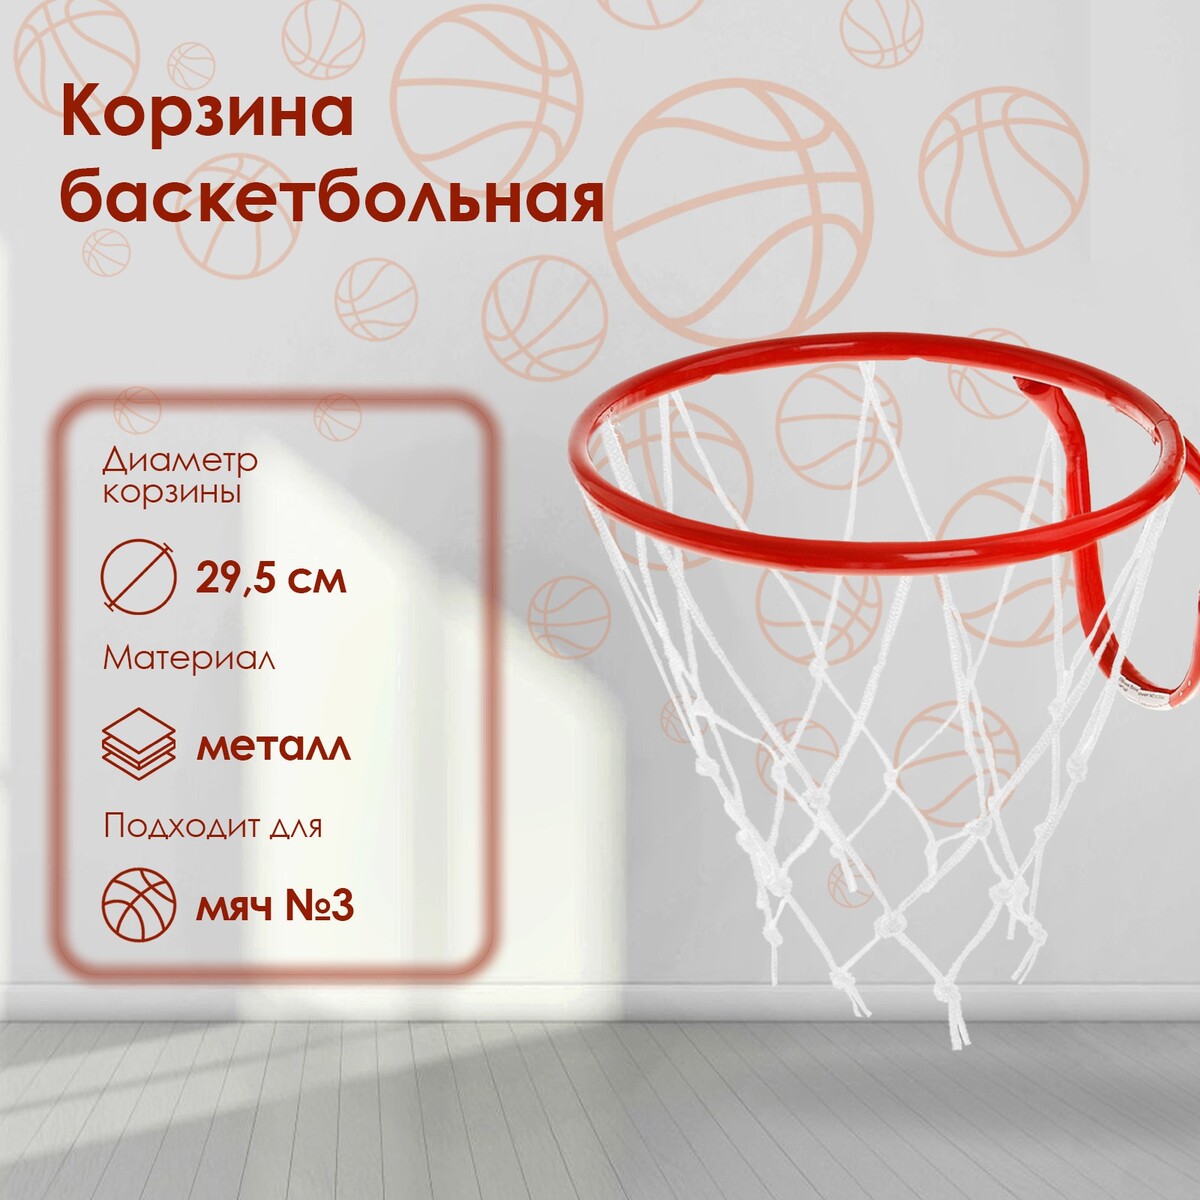 Корзина баскетбольная №3, d=295 мм, с сеткой кольцо баскетбольное 3 с упором и с сеткой